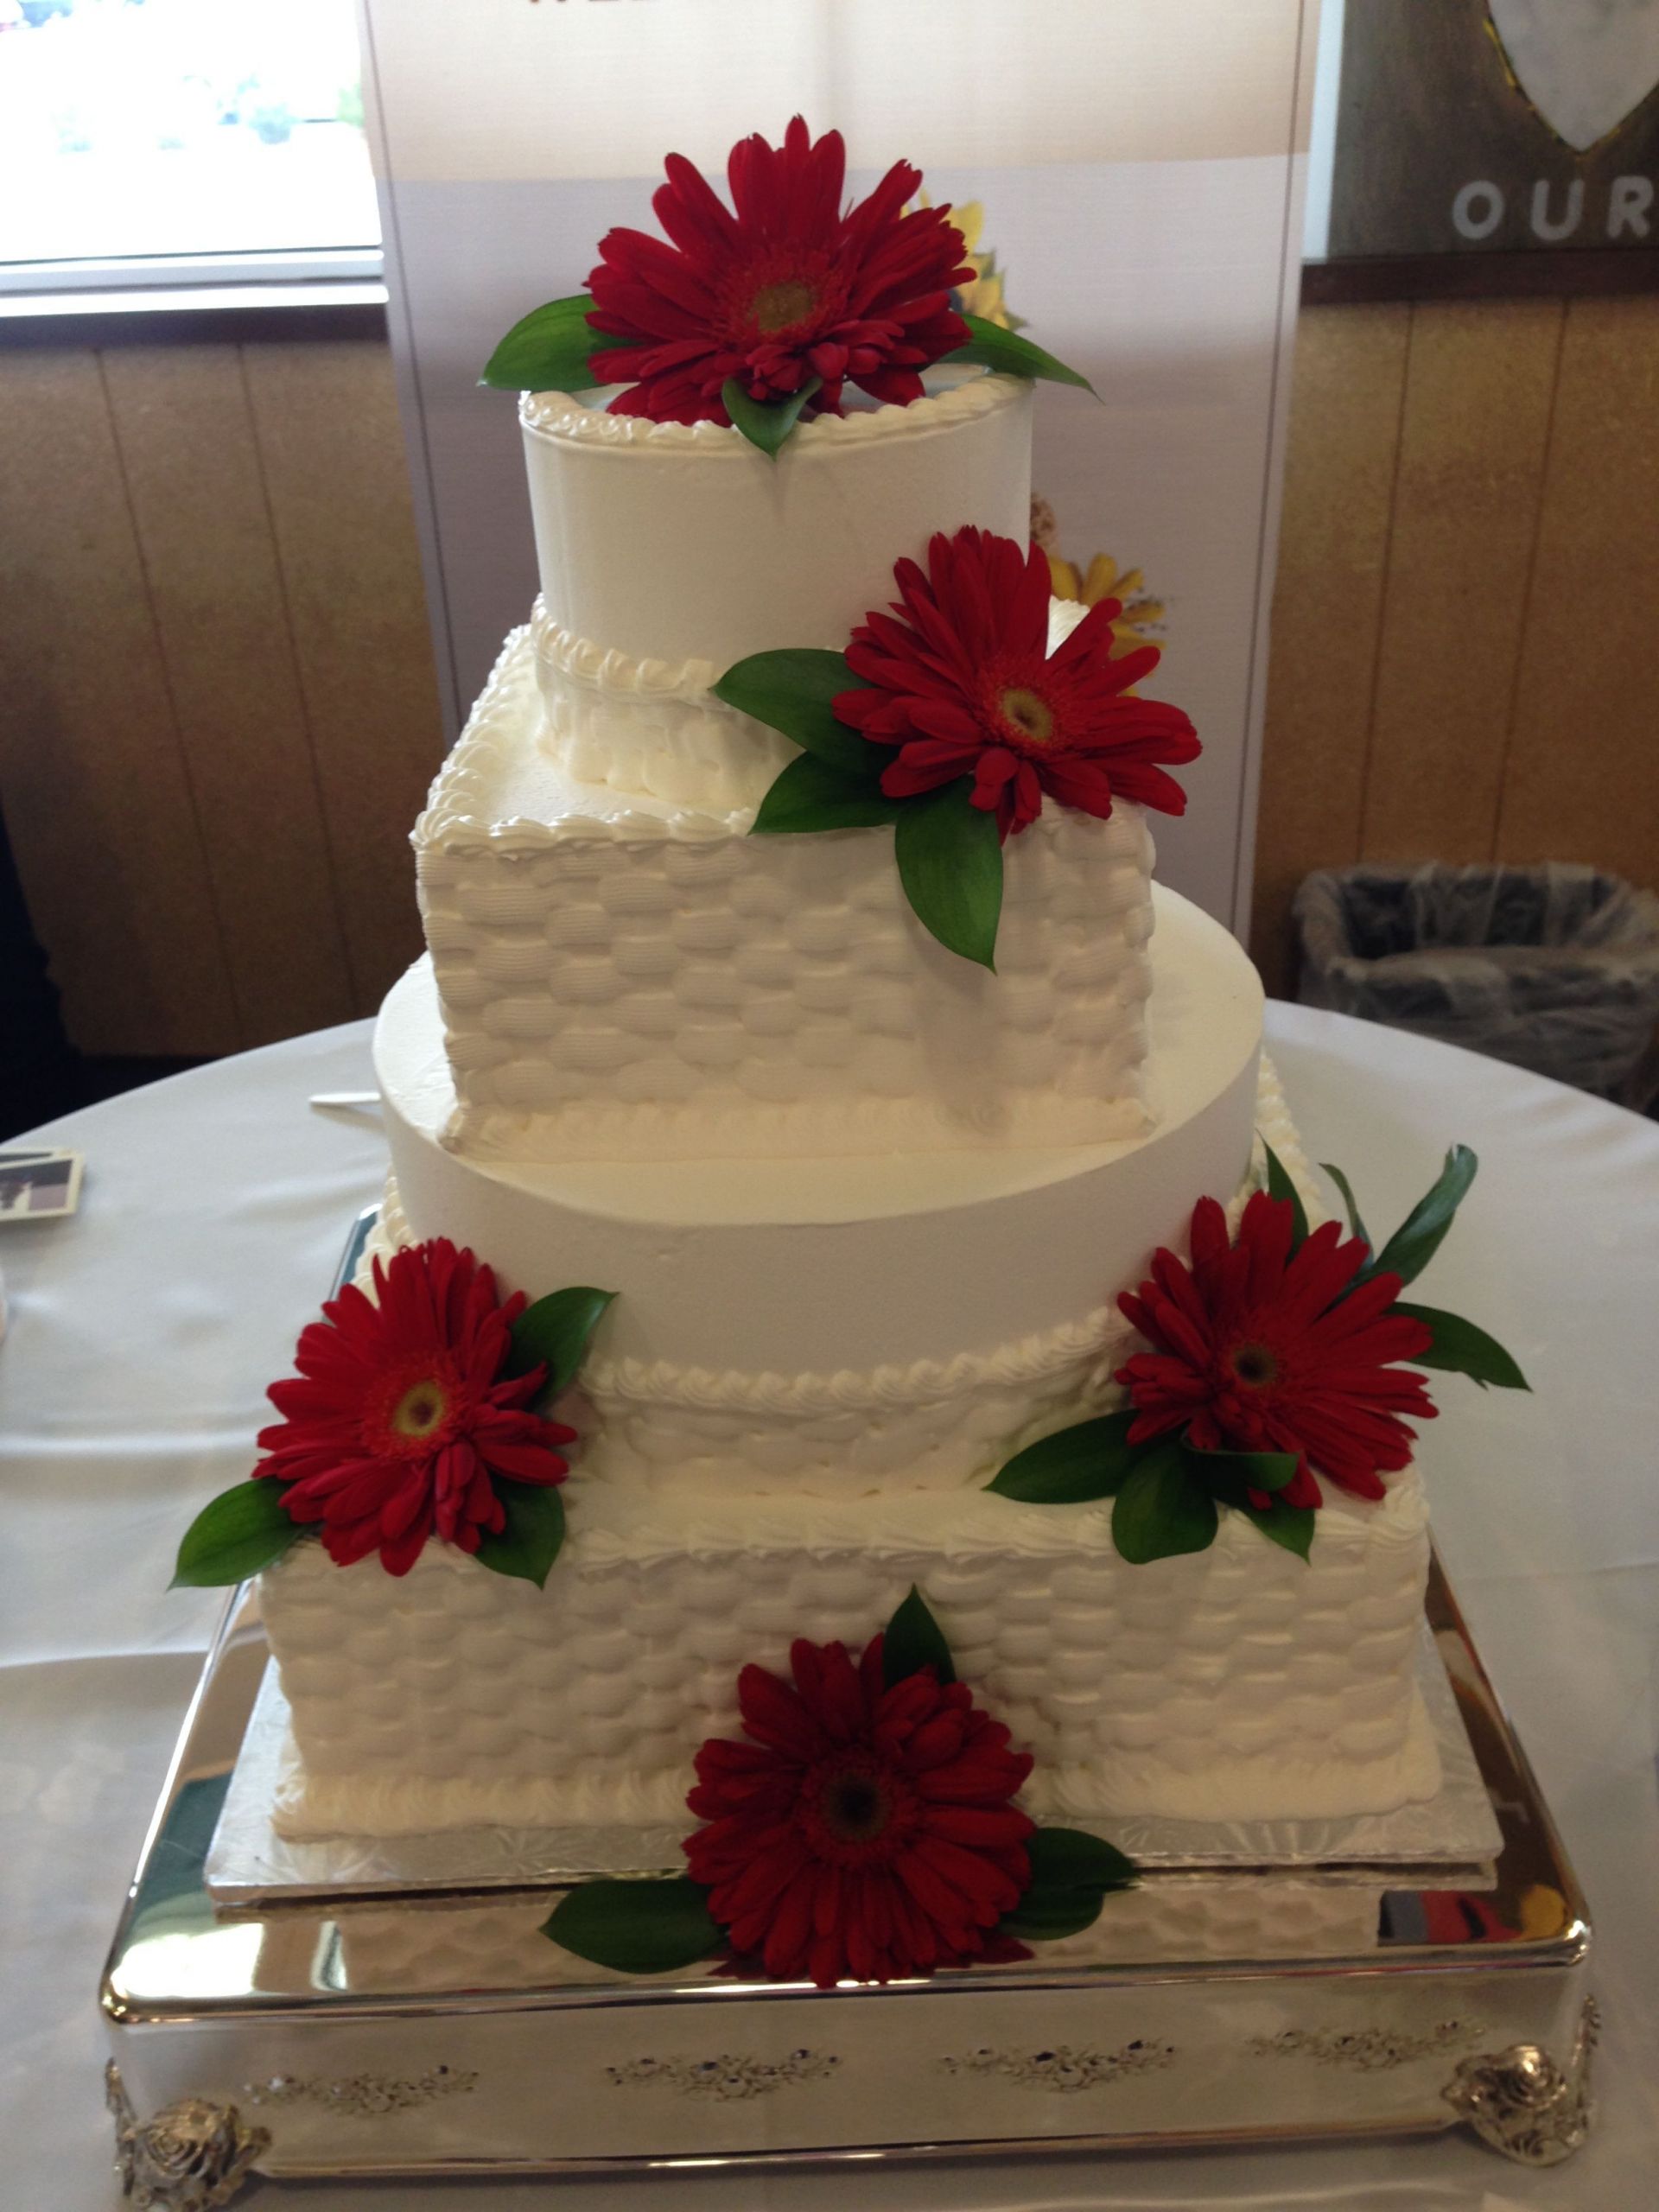 Whole Foods Wedding Cake
 Whole Foods Market wedding cake red daisies